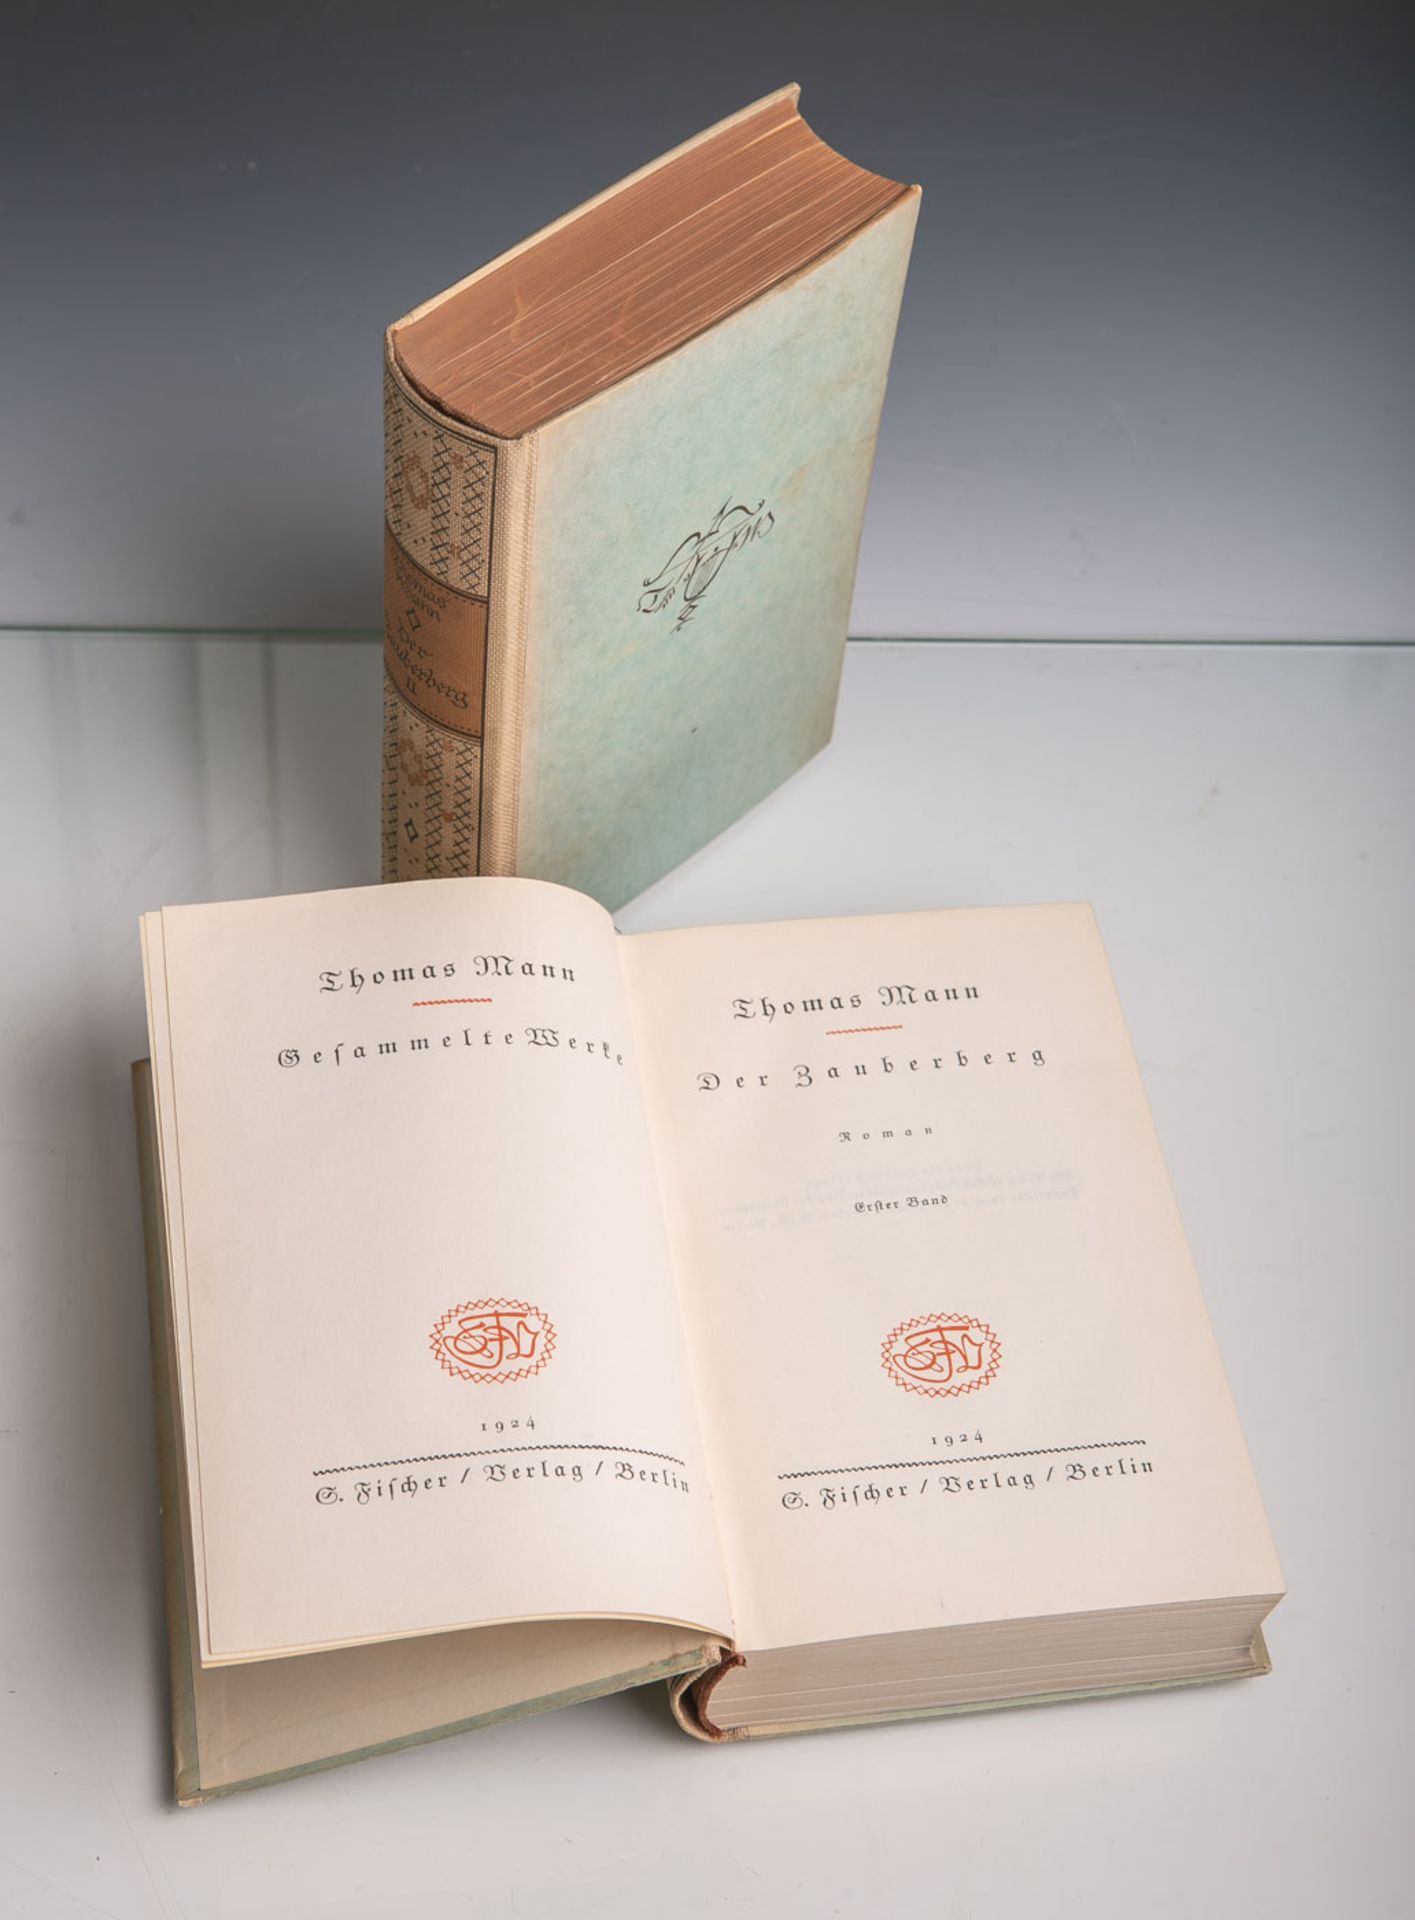 Mann, Thomas (Hrsg.), "Der Zauberberg", Roman in 2 Bänden, Fischer Verlag, Berlin 1924,578/629 S.